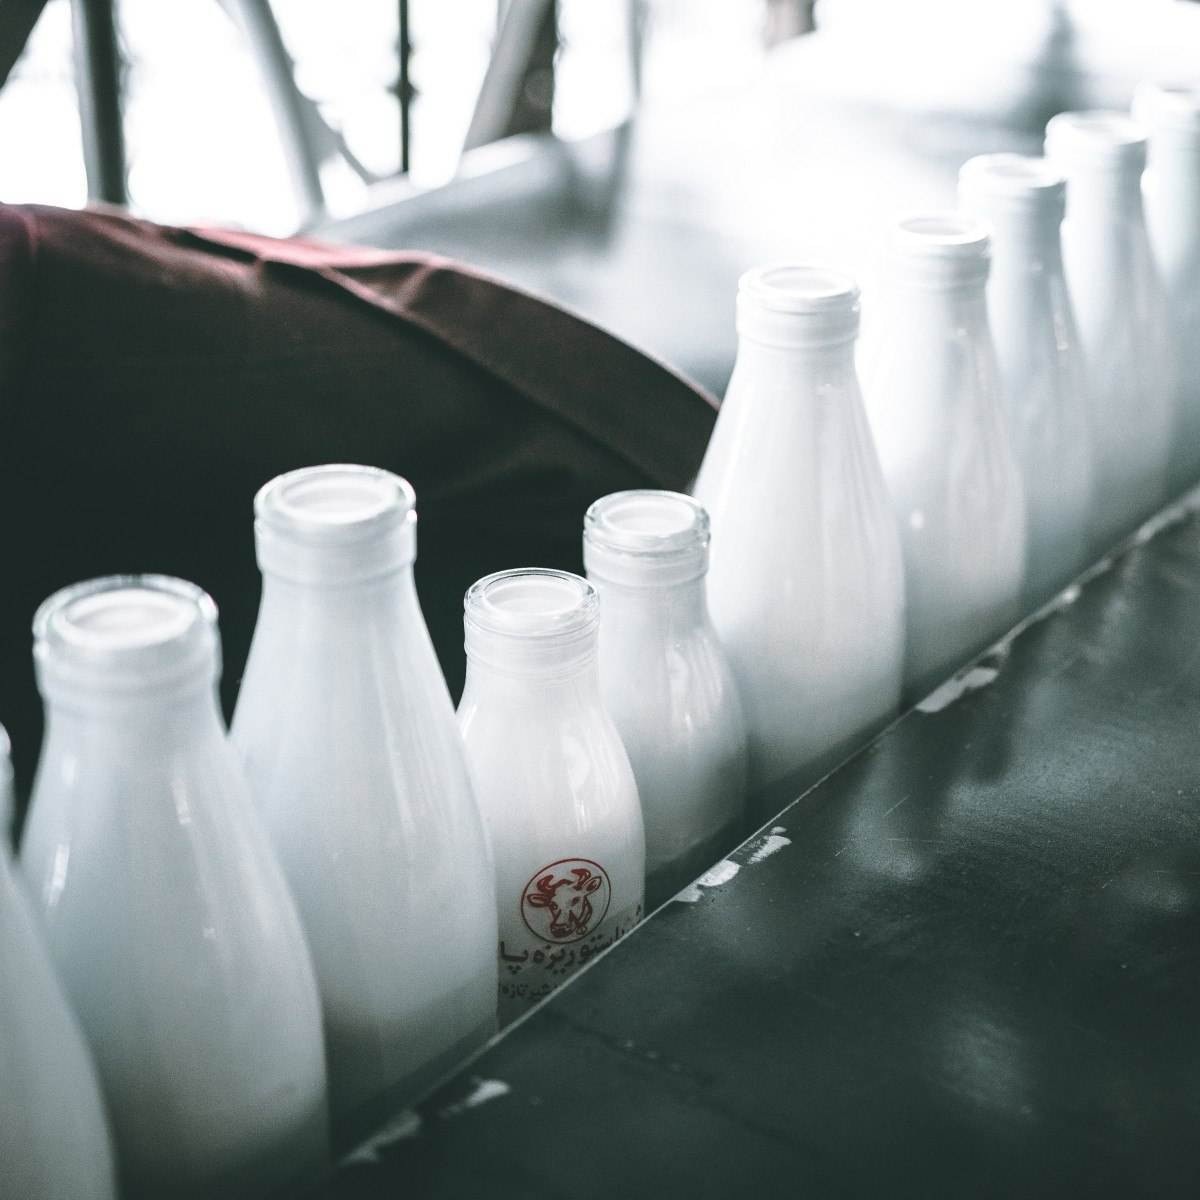 Decreto que isenta indústria que usa leite nacional já saiu do ministério